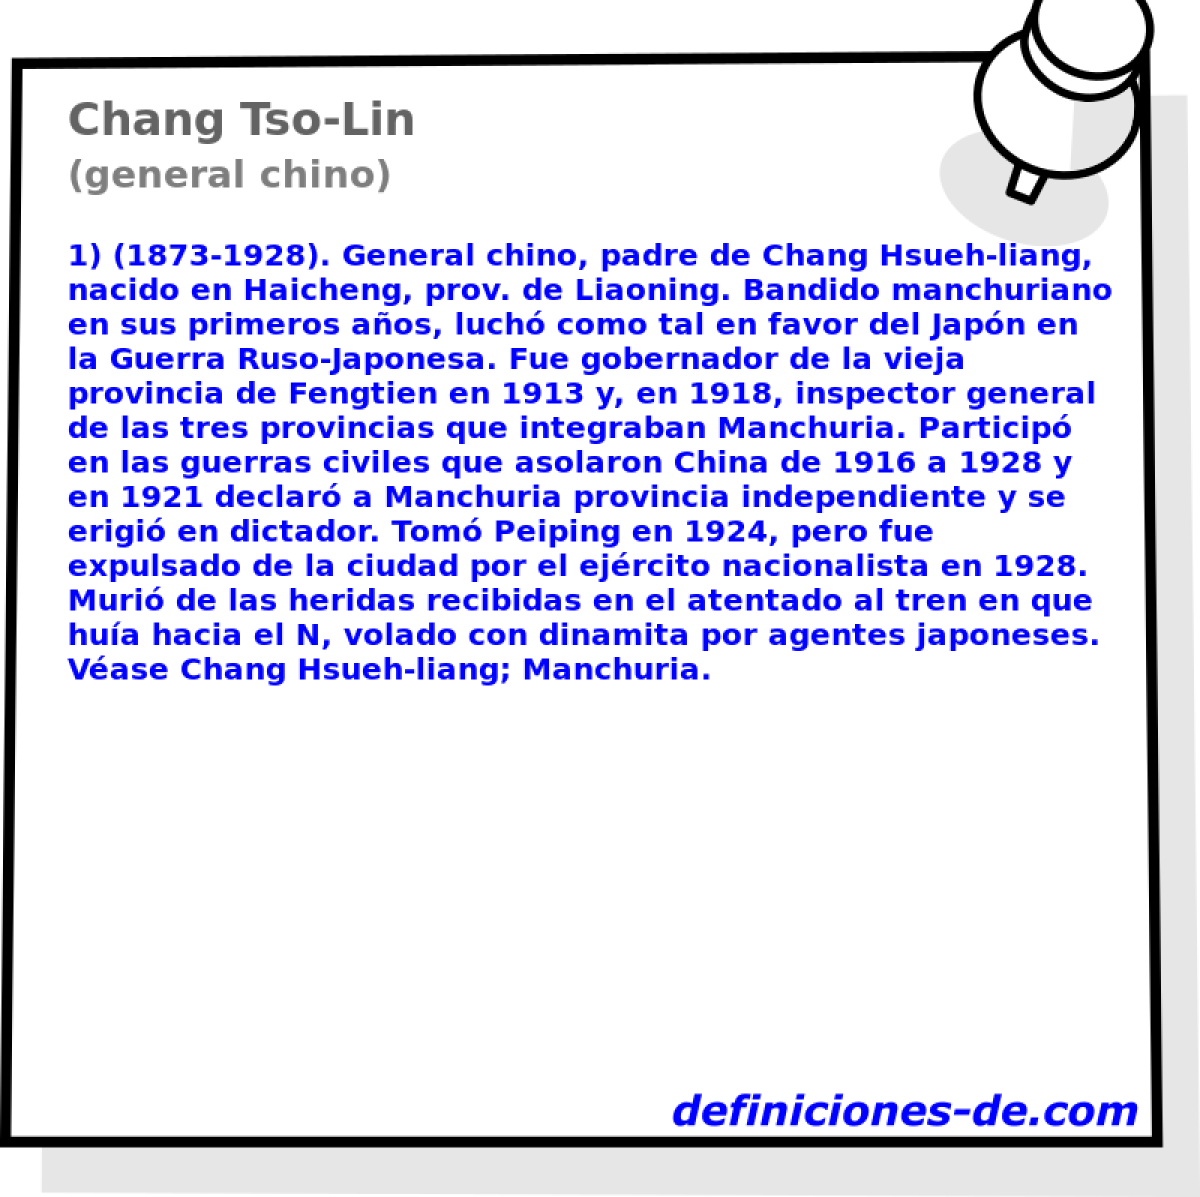 Chang Tso-Lin (general chino)